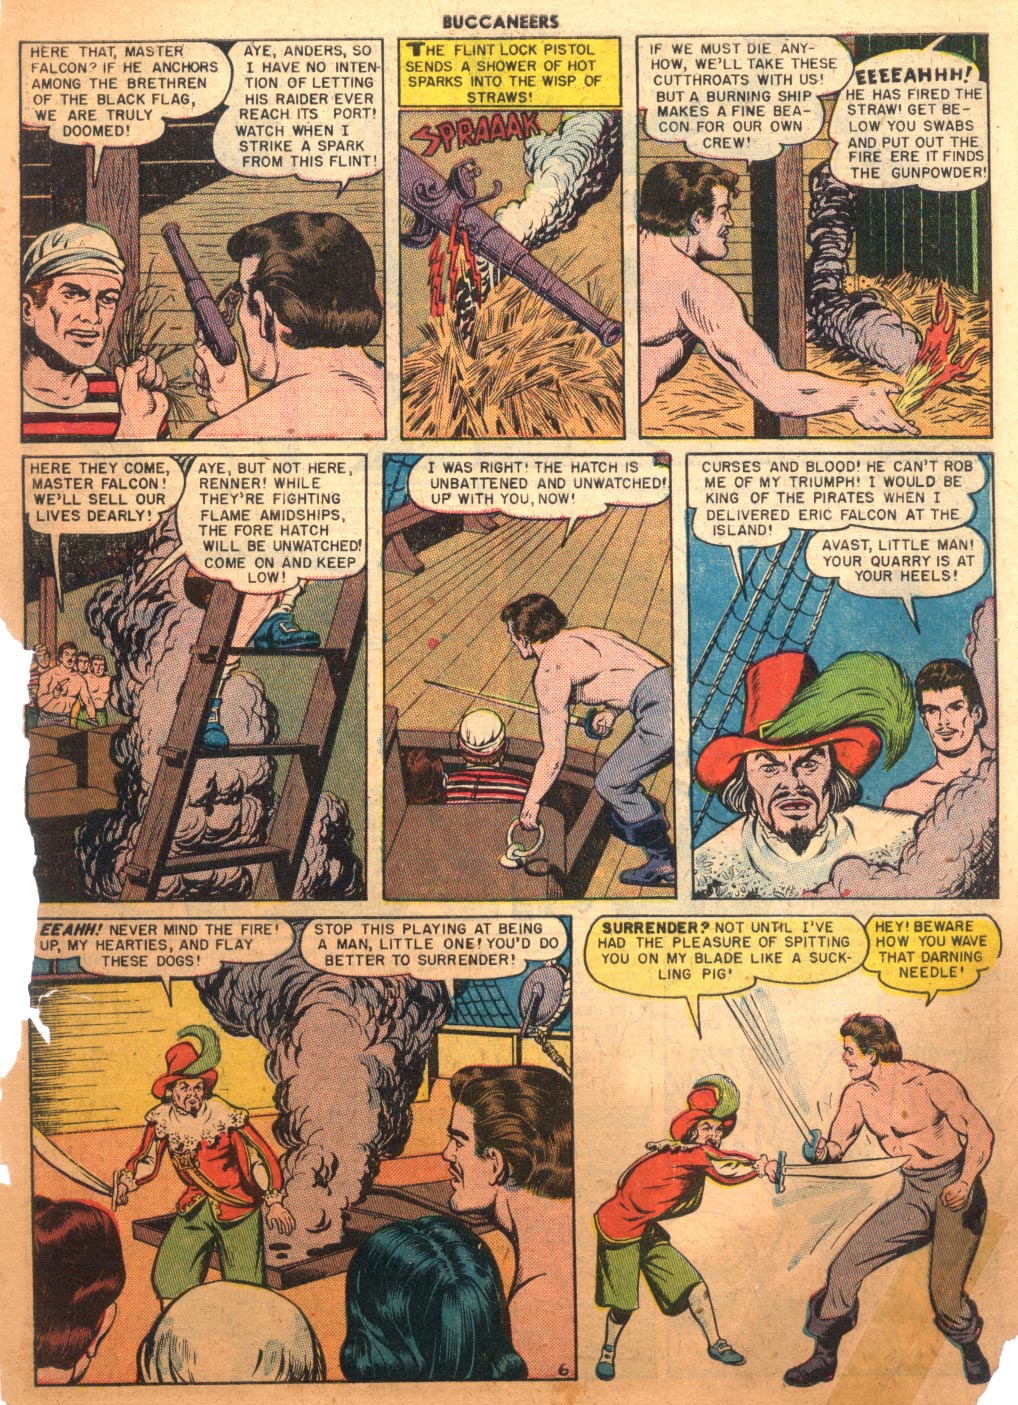 Read online Buccaneers comic -  Issue #26 - 41